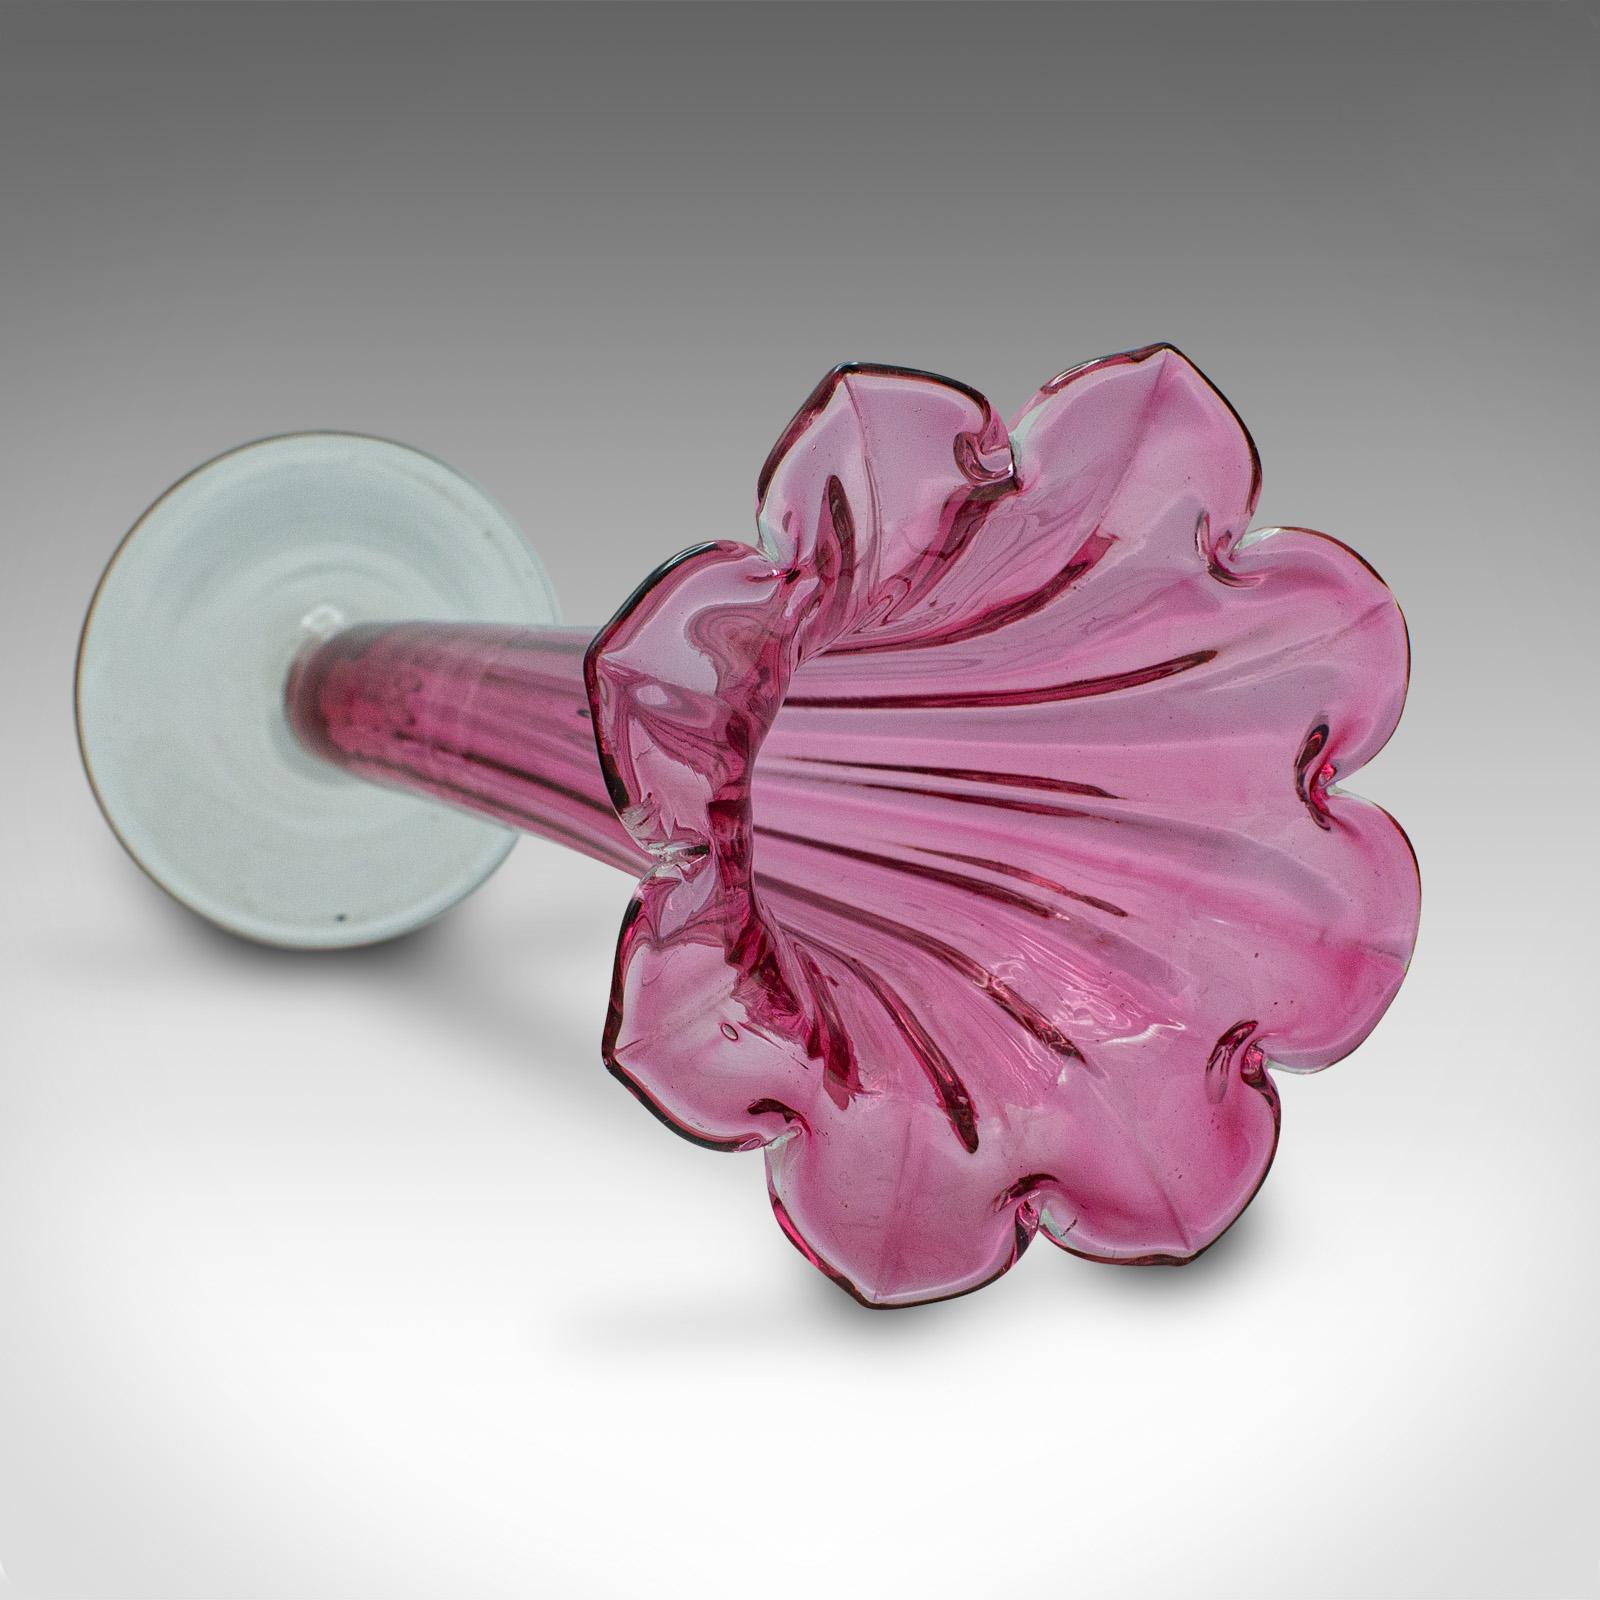 Vintage Cranberry Glass Stem Vase Set, English, Decorative, Flower Slip, Jug For Sale 5